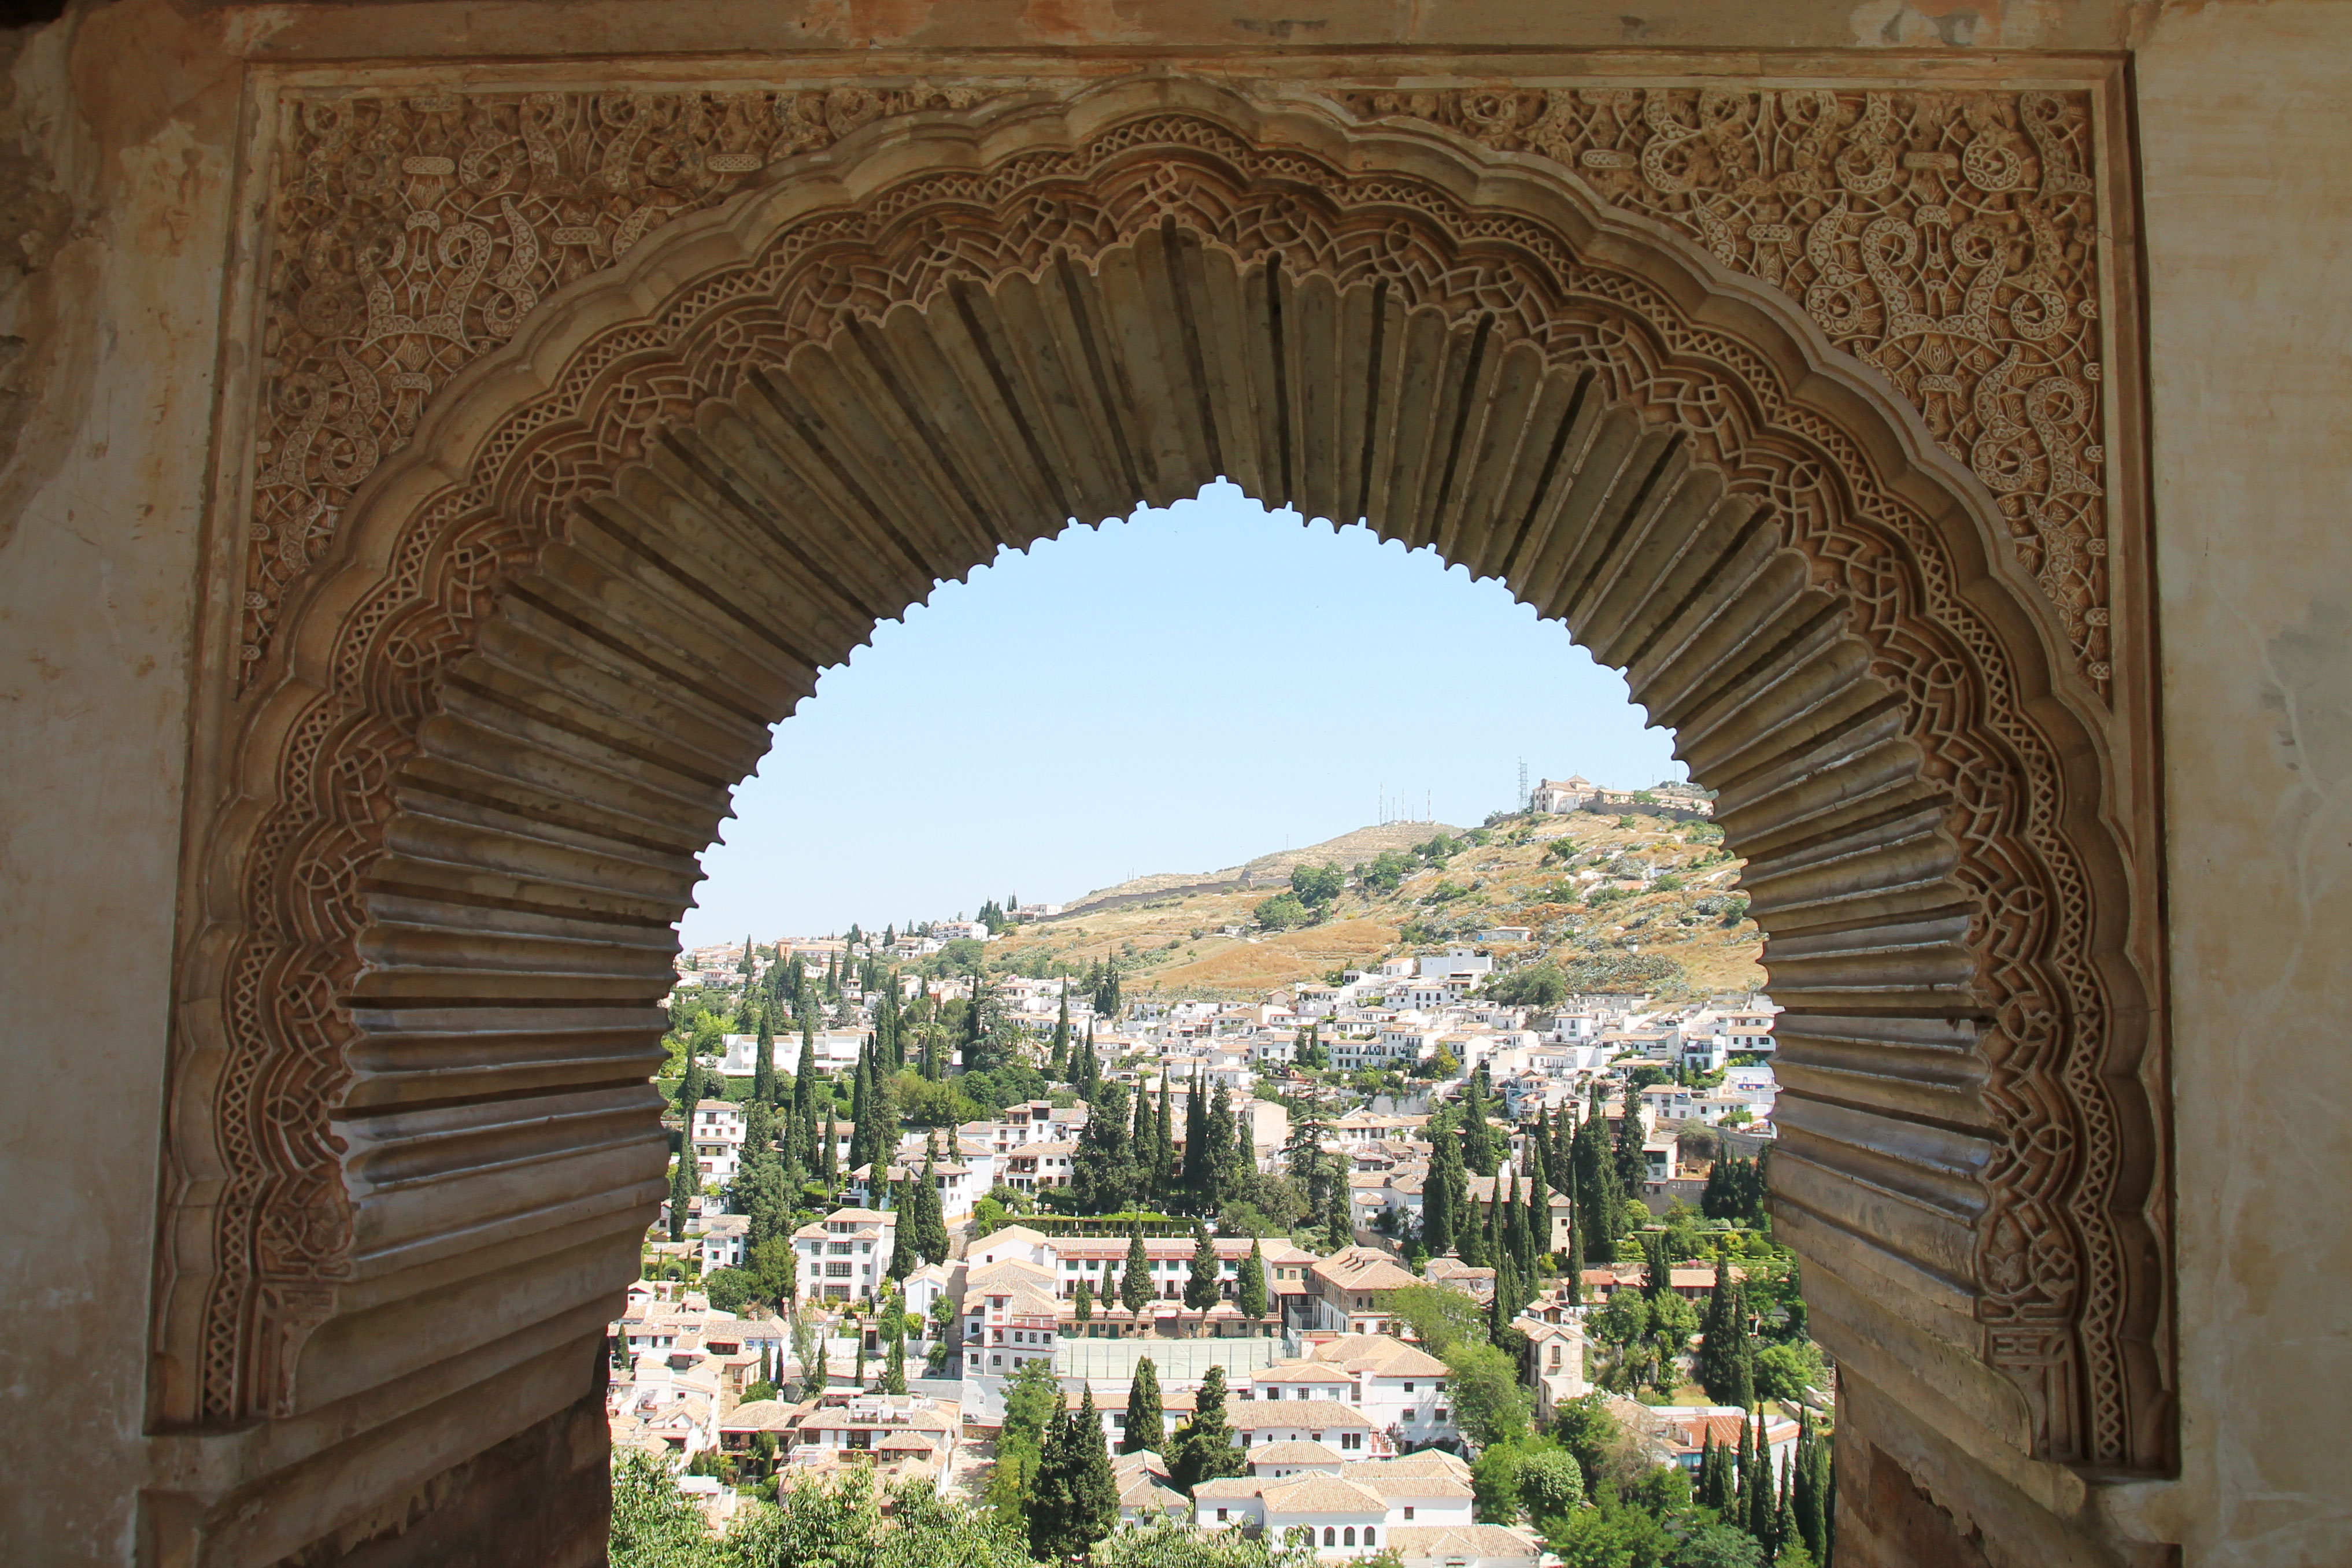 Het Alhambra en andere parels van Granada